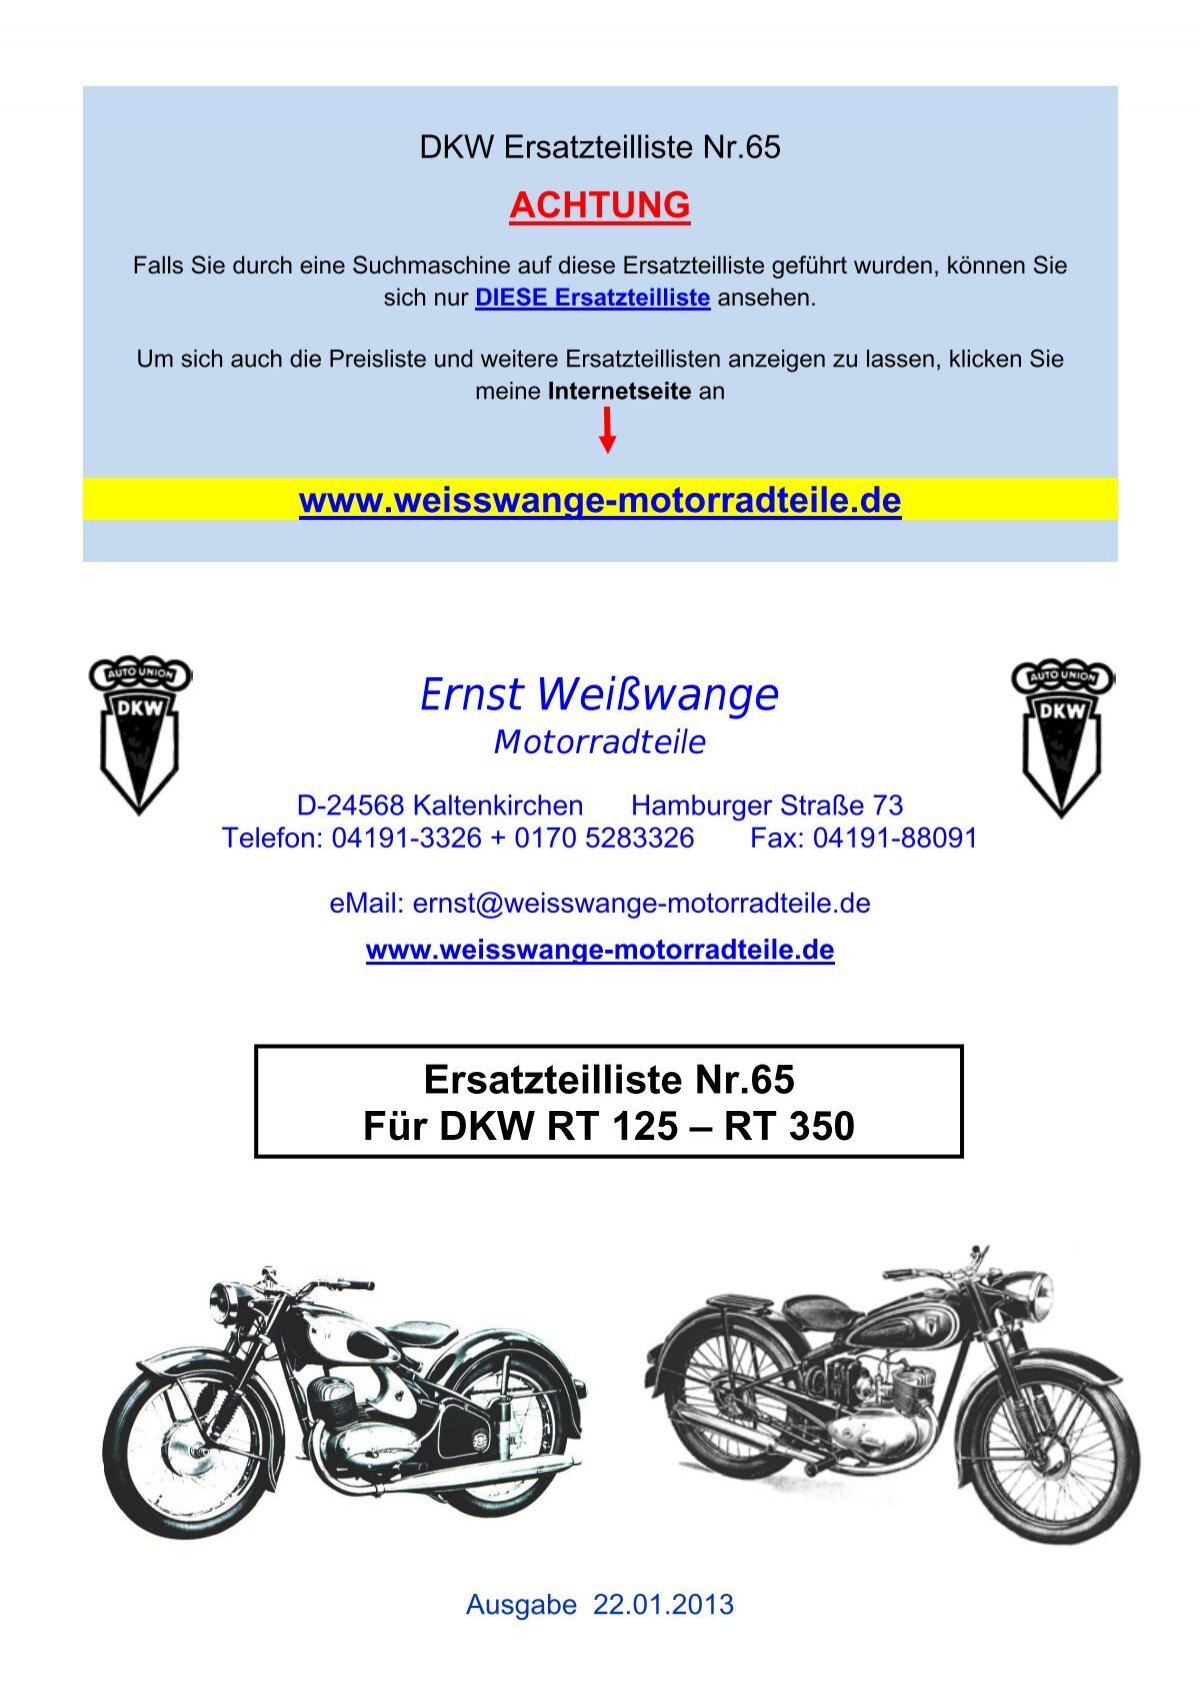 DKW Ersatzteilliste Nr.65 - Ernst Weißwange